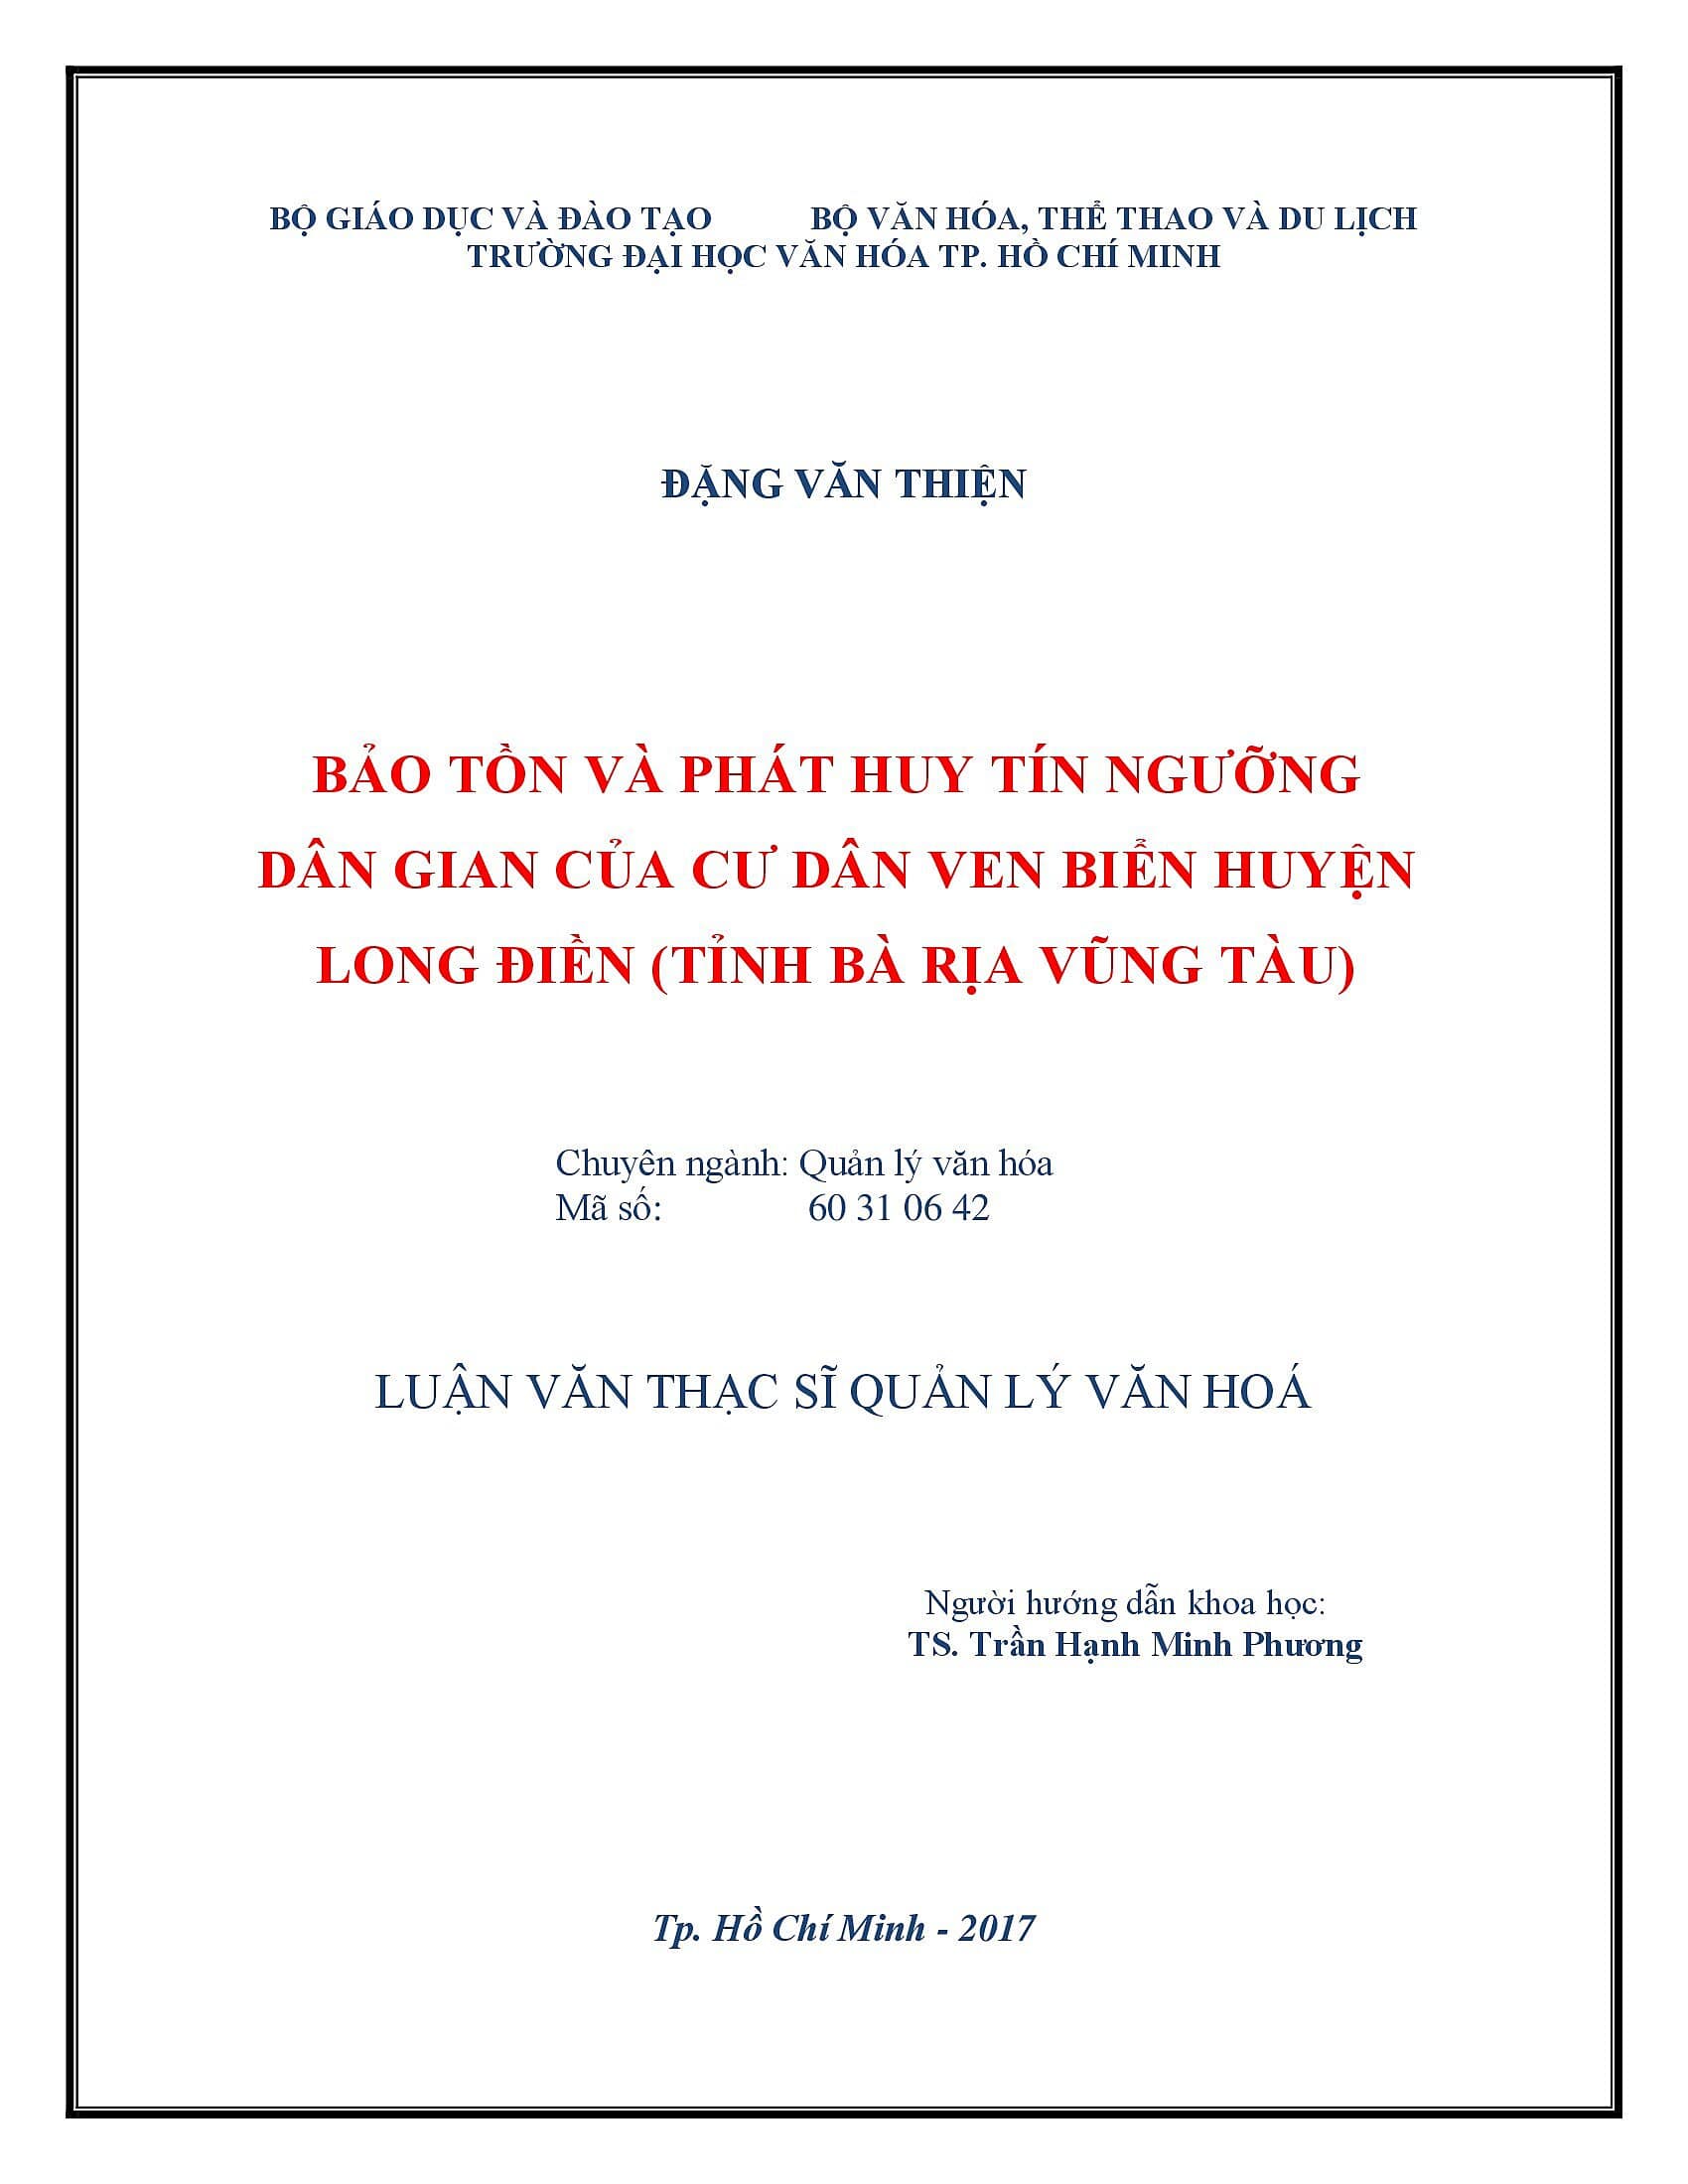 Bảo tồn và phát huy tín ngưỡng dân gian của cư dân ven biển huyện Long Điền (tỉnh Bà Rìa - Vũng Tàu)